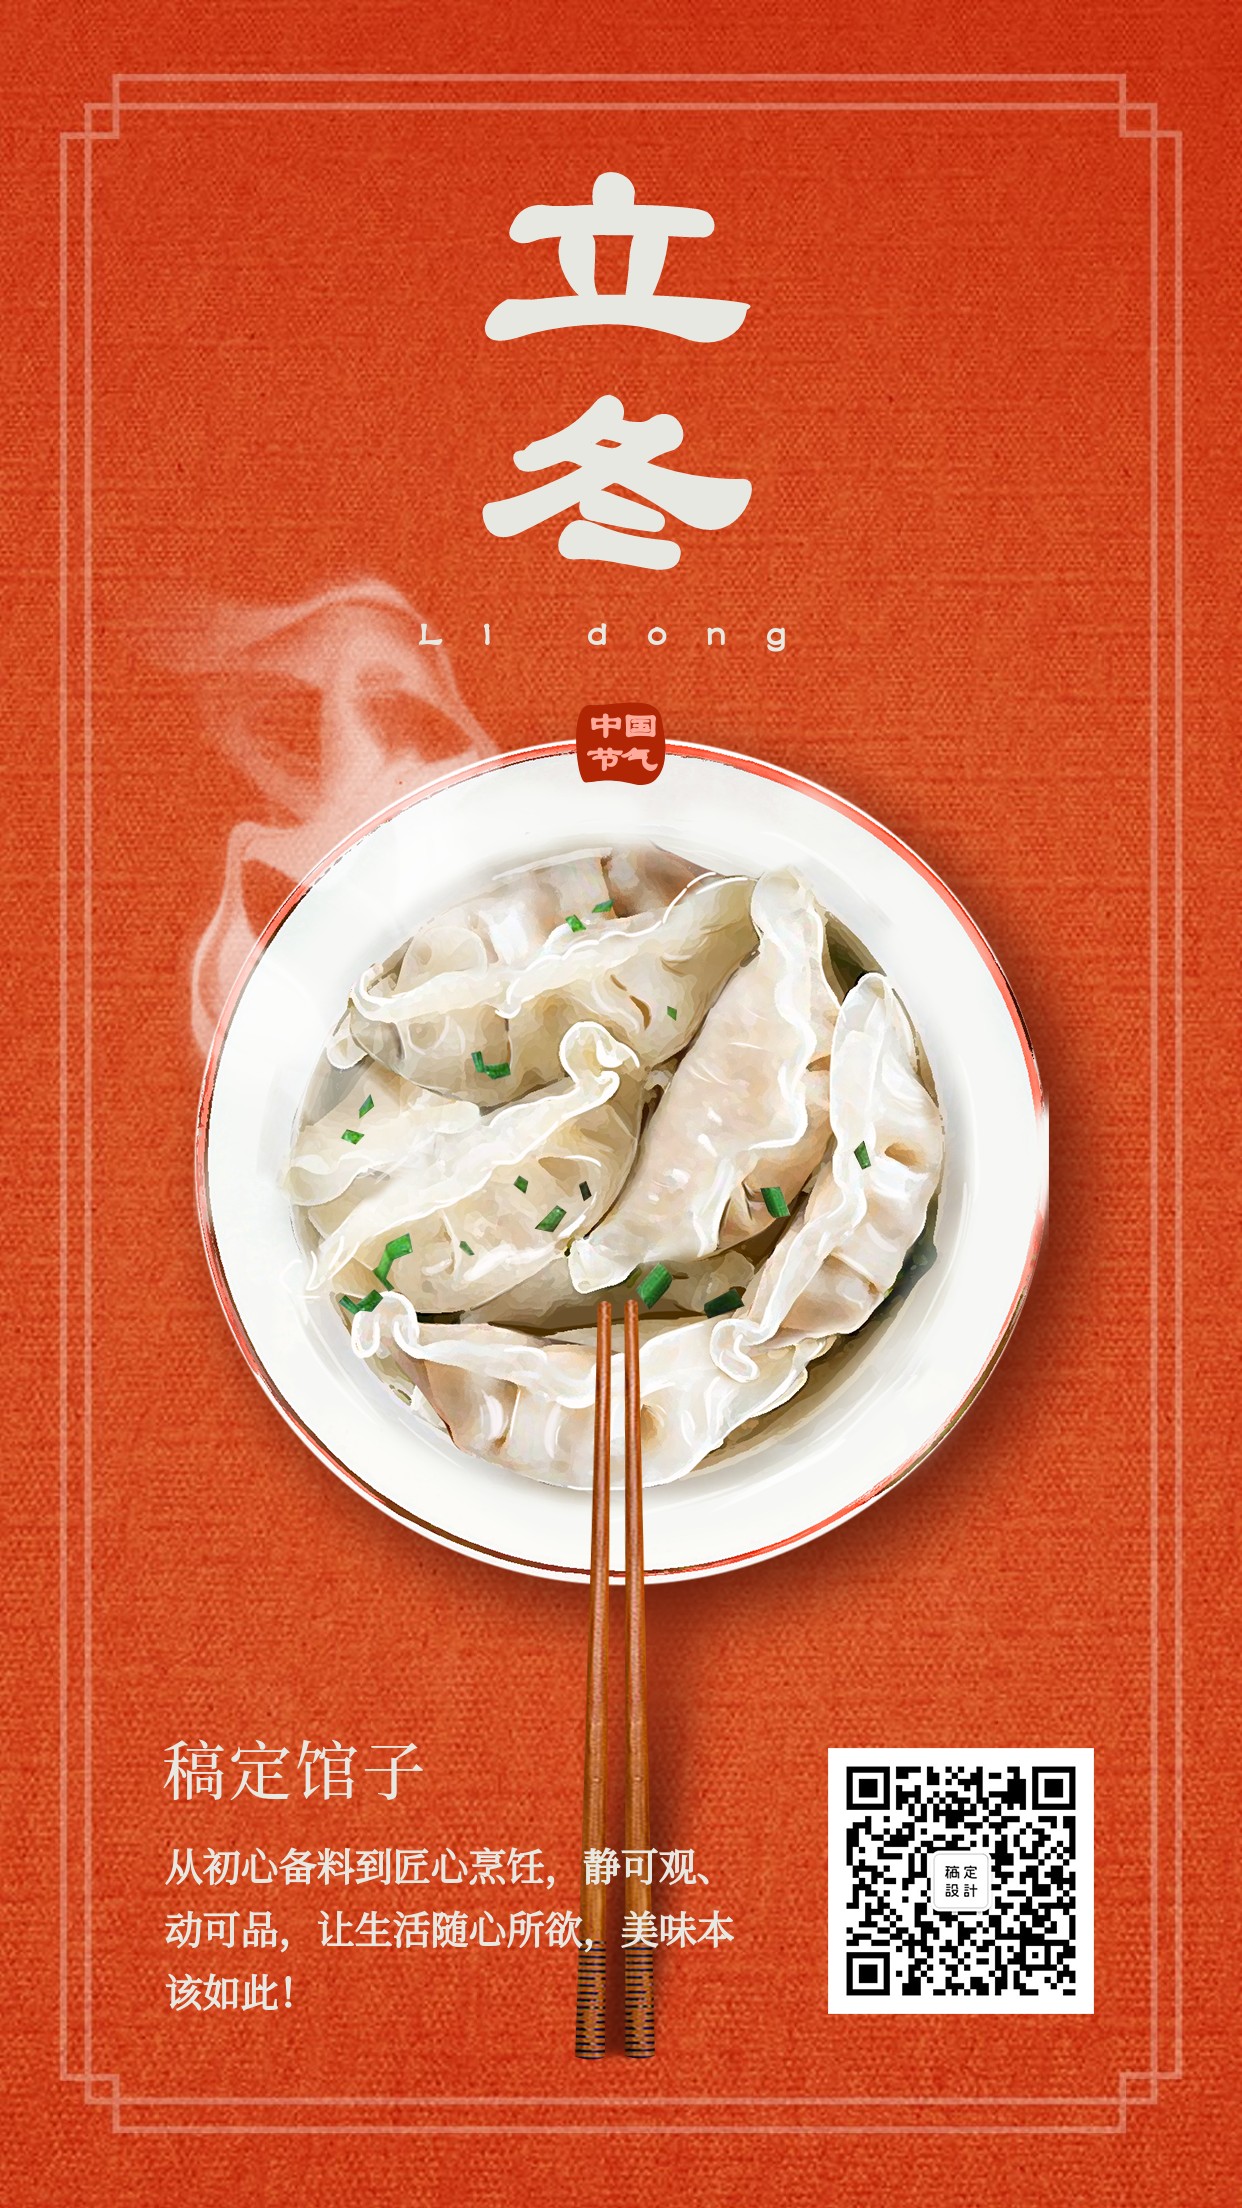 立冬美食红色实景饺子手机海报预览效果